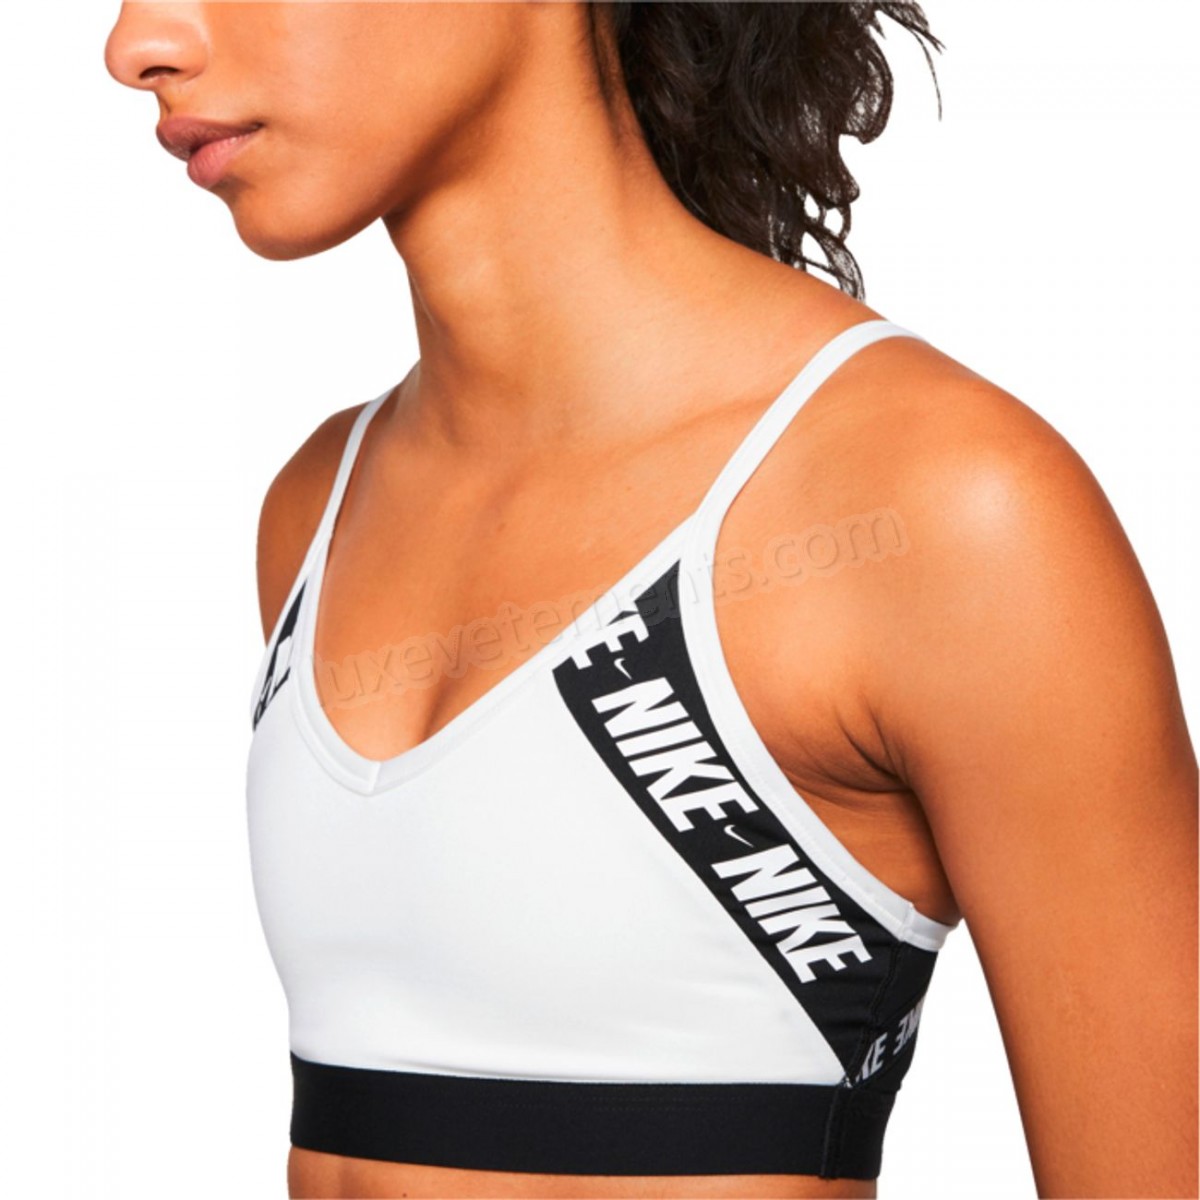 Nike-BRASSIERE Fitness femme NIKE INDY LOGO Vente en ligne - -2